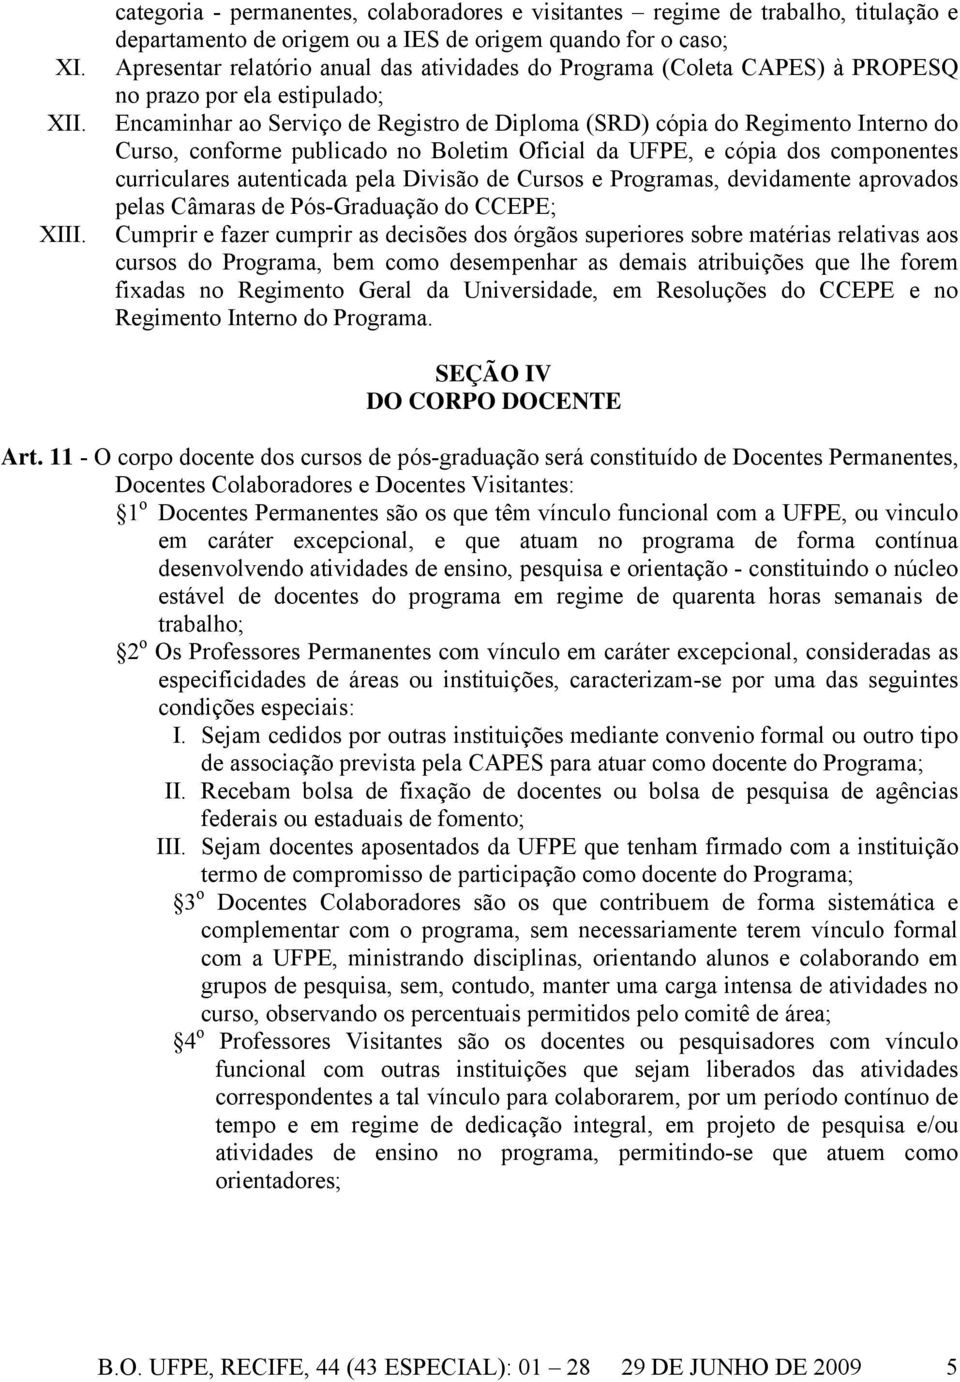 (Coleta CAPES) à PROPESQ no prazo por ela estipulado; Encaminhar ao Serviço de Registro de Diploma (SRD) cópia do Regimento Interno do Curso, conforme publicado no Boletim Oficial da UFPE, e cópia